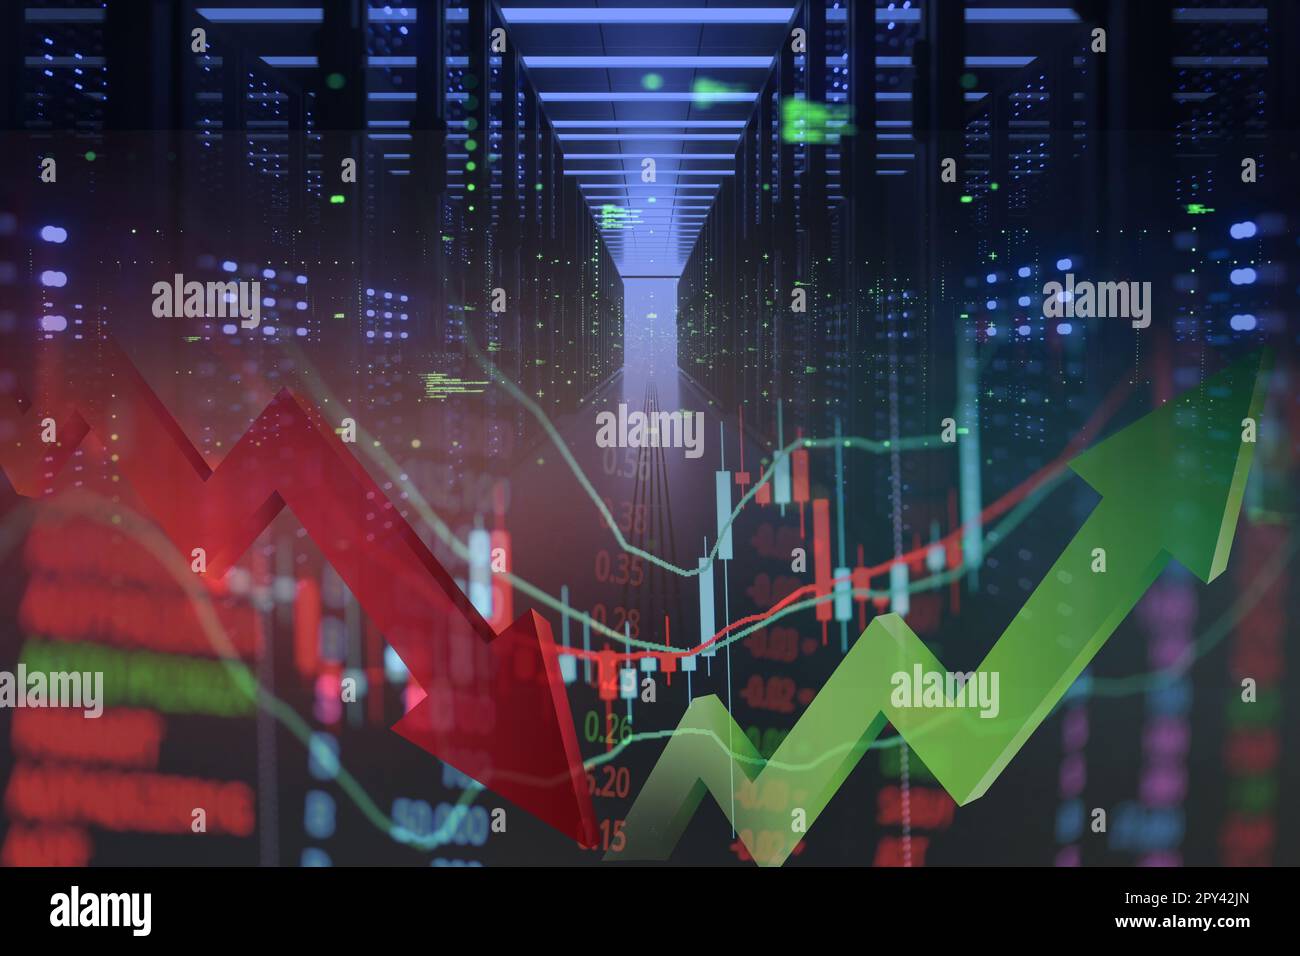 Gráfico de mercado de valores análisis de trading inversión financiera, bolsa de valores gráfico de divisas financiero gráfico de mercado de valores gráfico de crisis de negocios crece Foto de stock